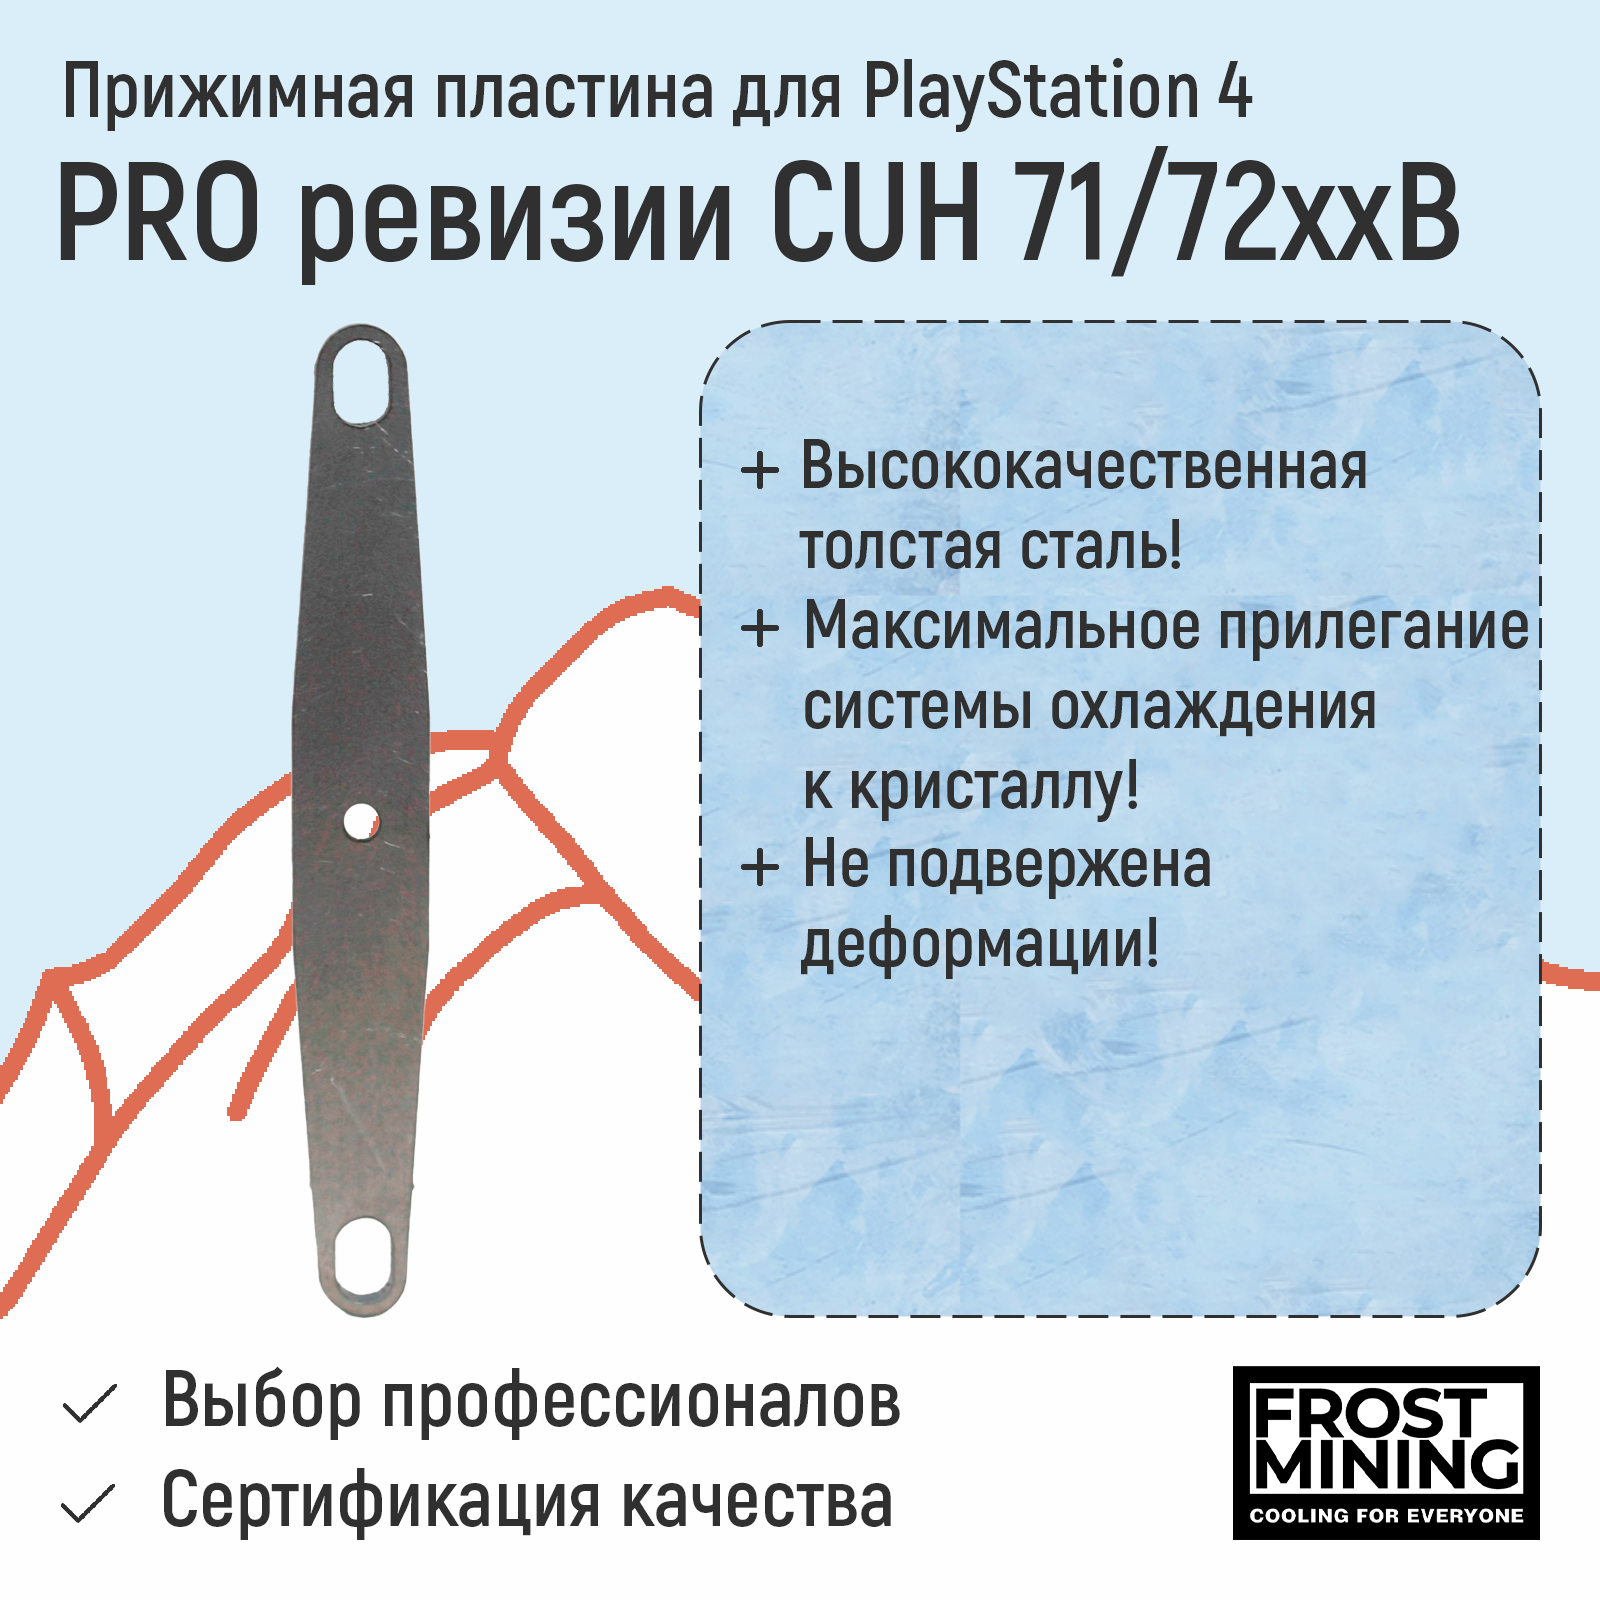 Прижимная пластина для приставки FrostMining для Playstation 4 Pro